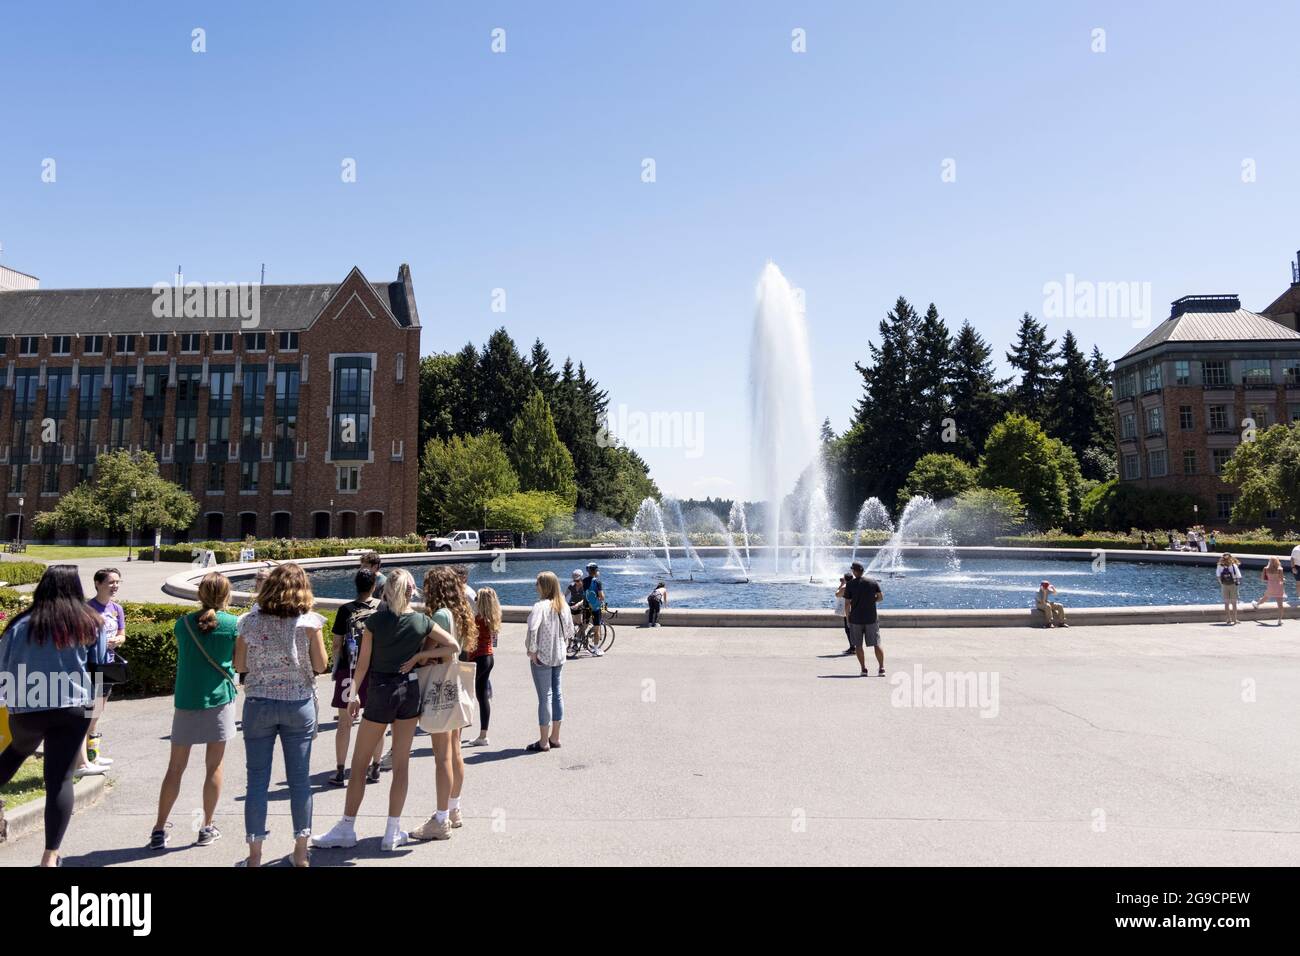 Los estudiantes en un tour de verano se reúnen en la Fuente Drumheller en el campus de la Universidad de Washington en Seattle, WA, Estados Unidos. Foto de stock